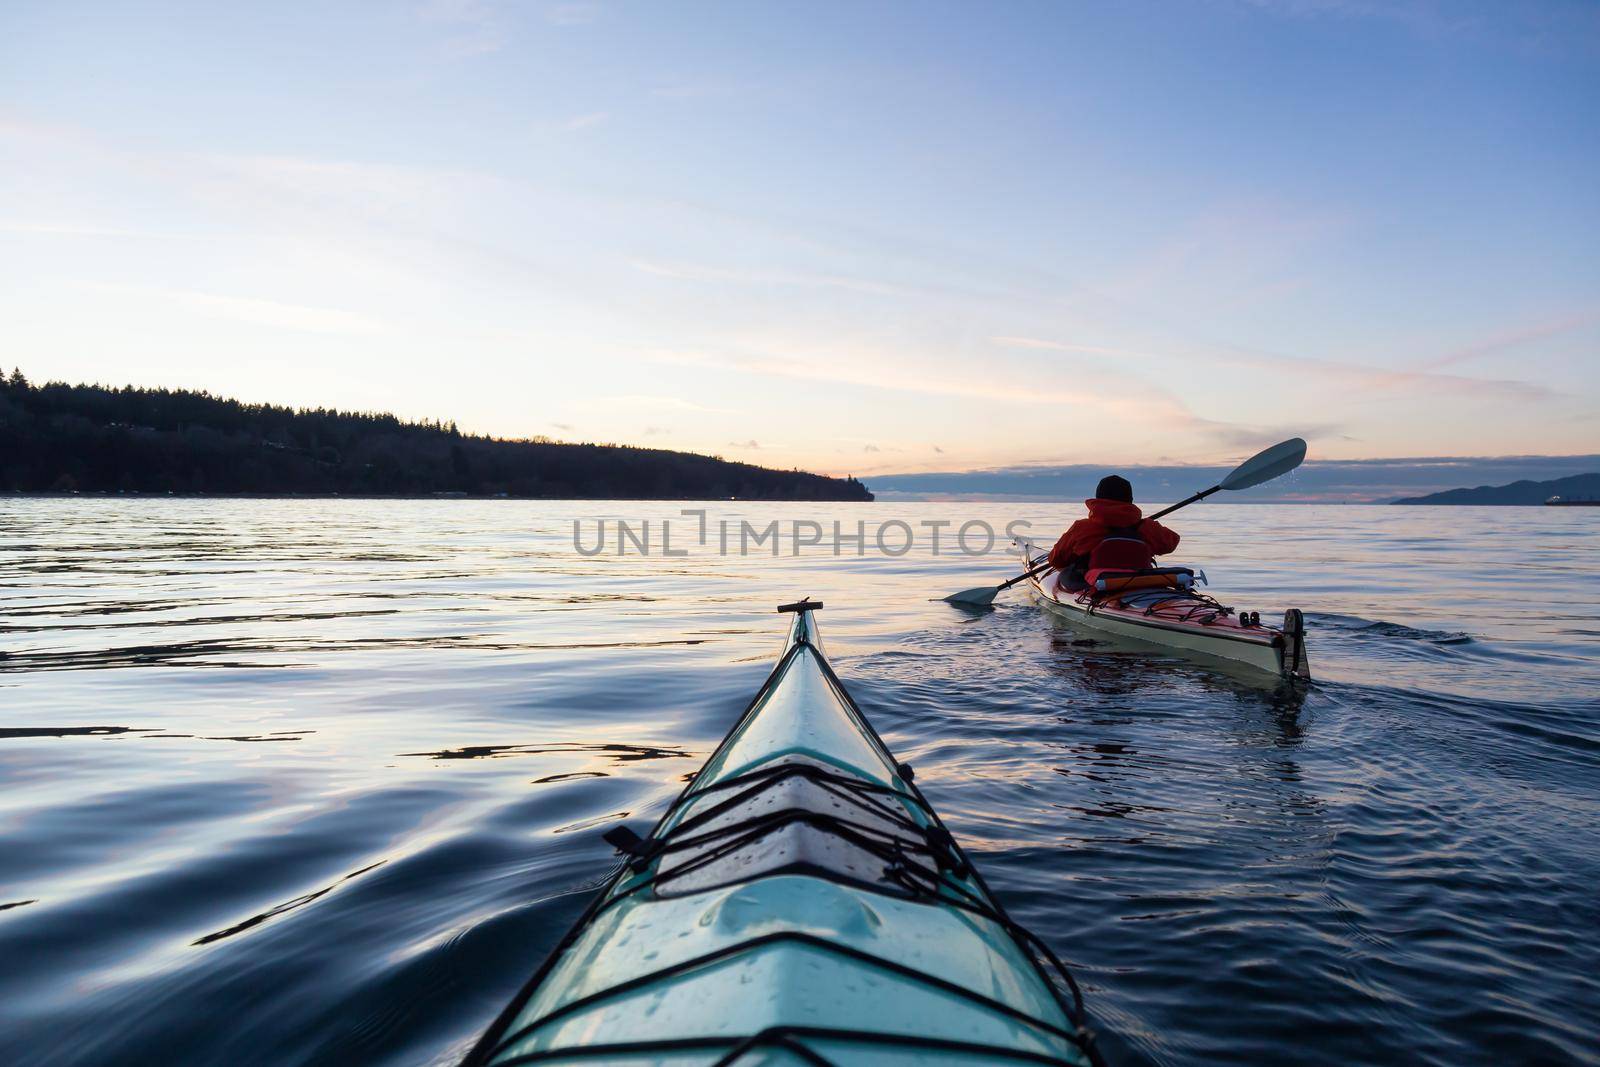 Ocean Kayaking during Sunset by edb3_16